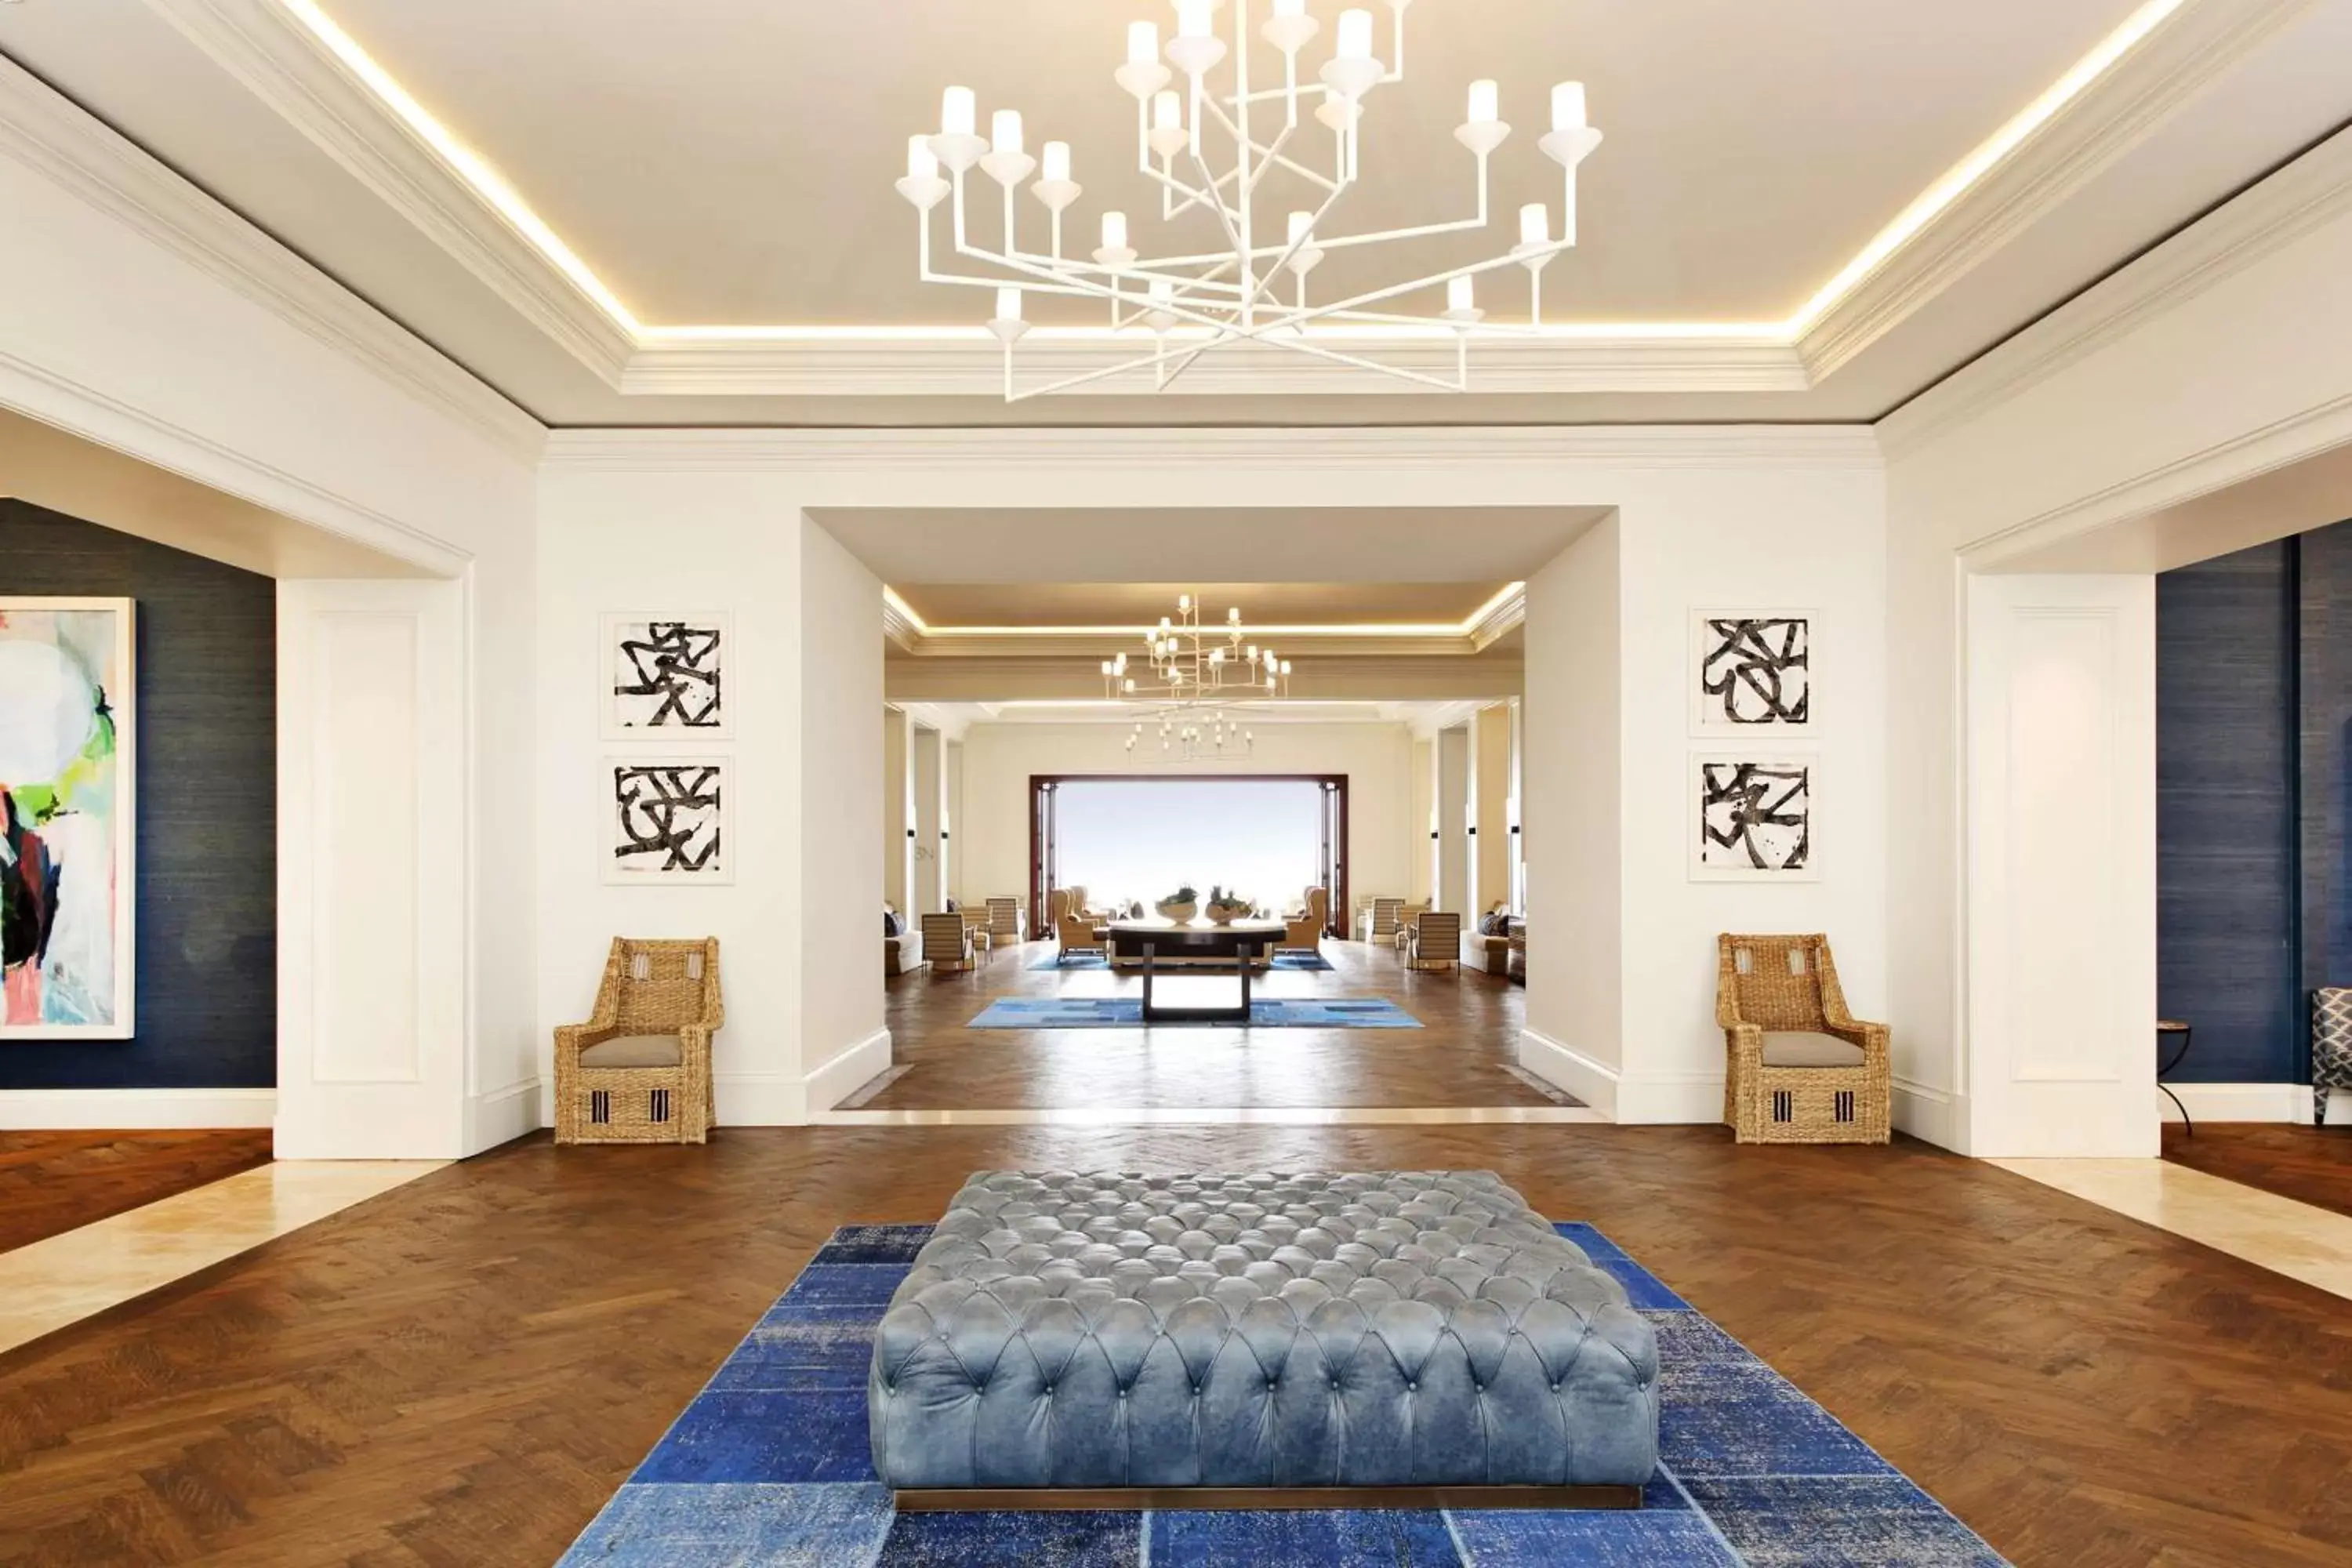 Lobby or reception, Lobby/Reception in Waldorf Astoria Monarch Beach Resort & Club